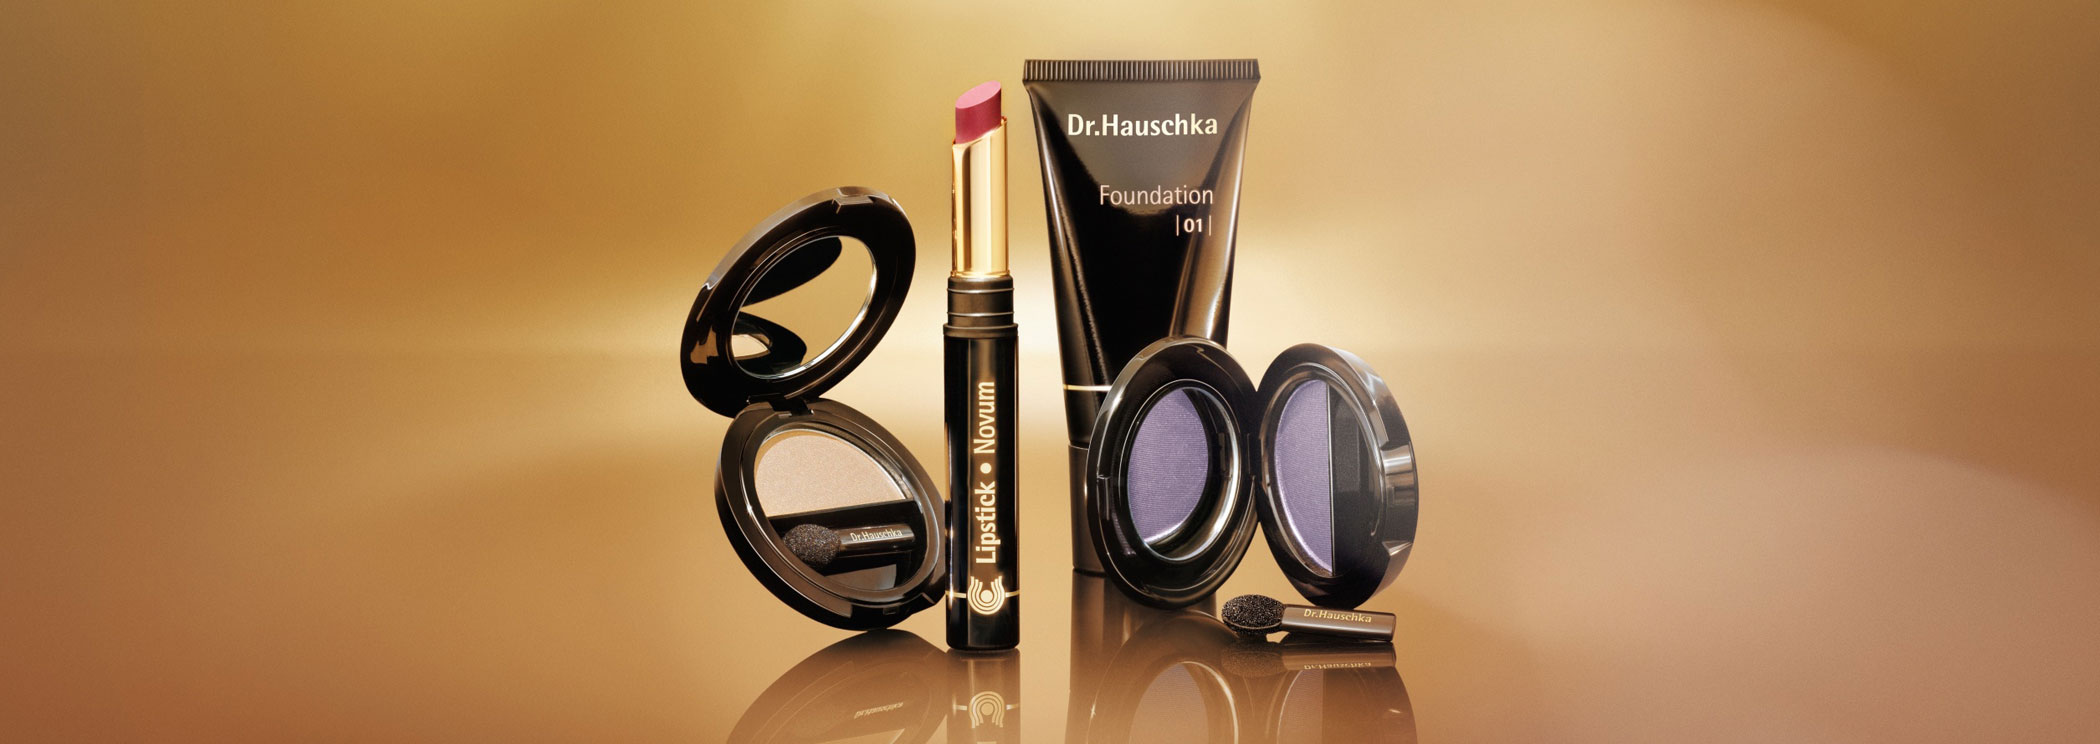 Festtags-Make-Up - Produktvorschau - Dr.Hauschka